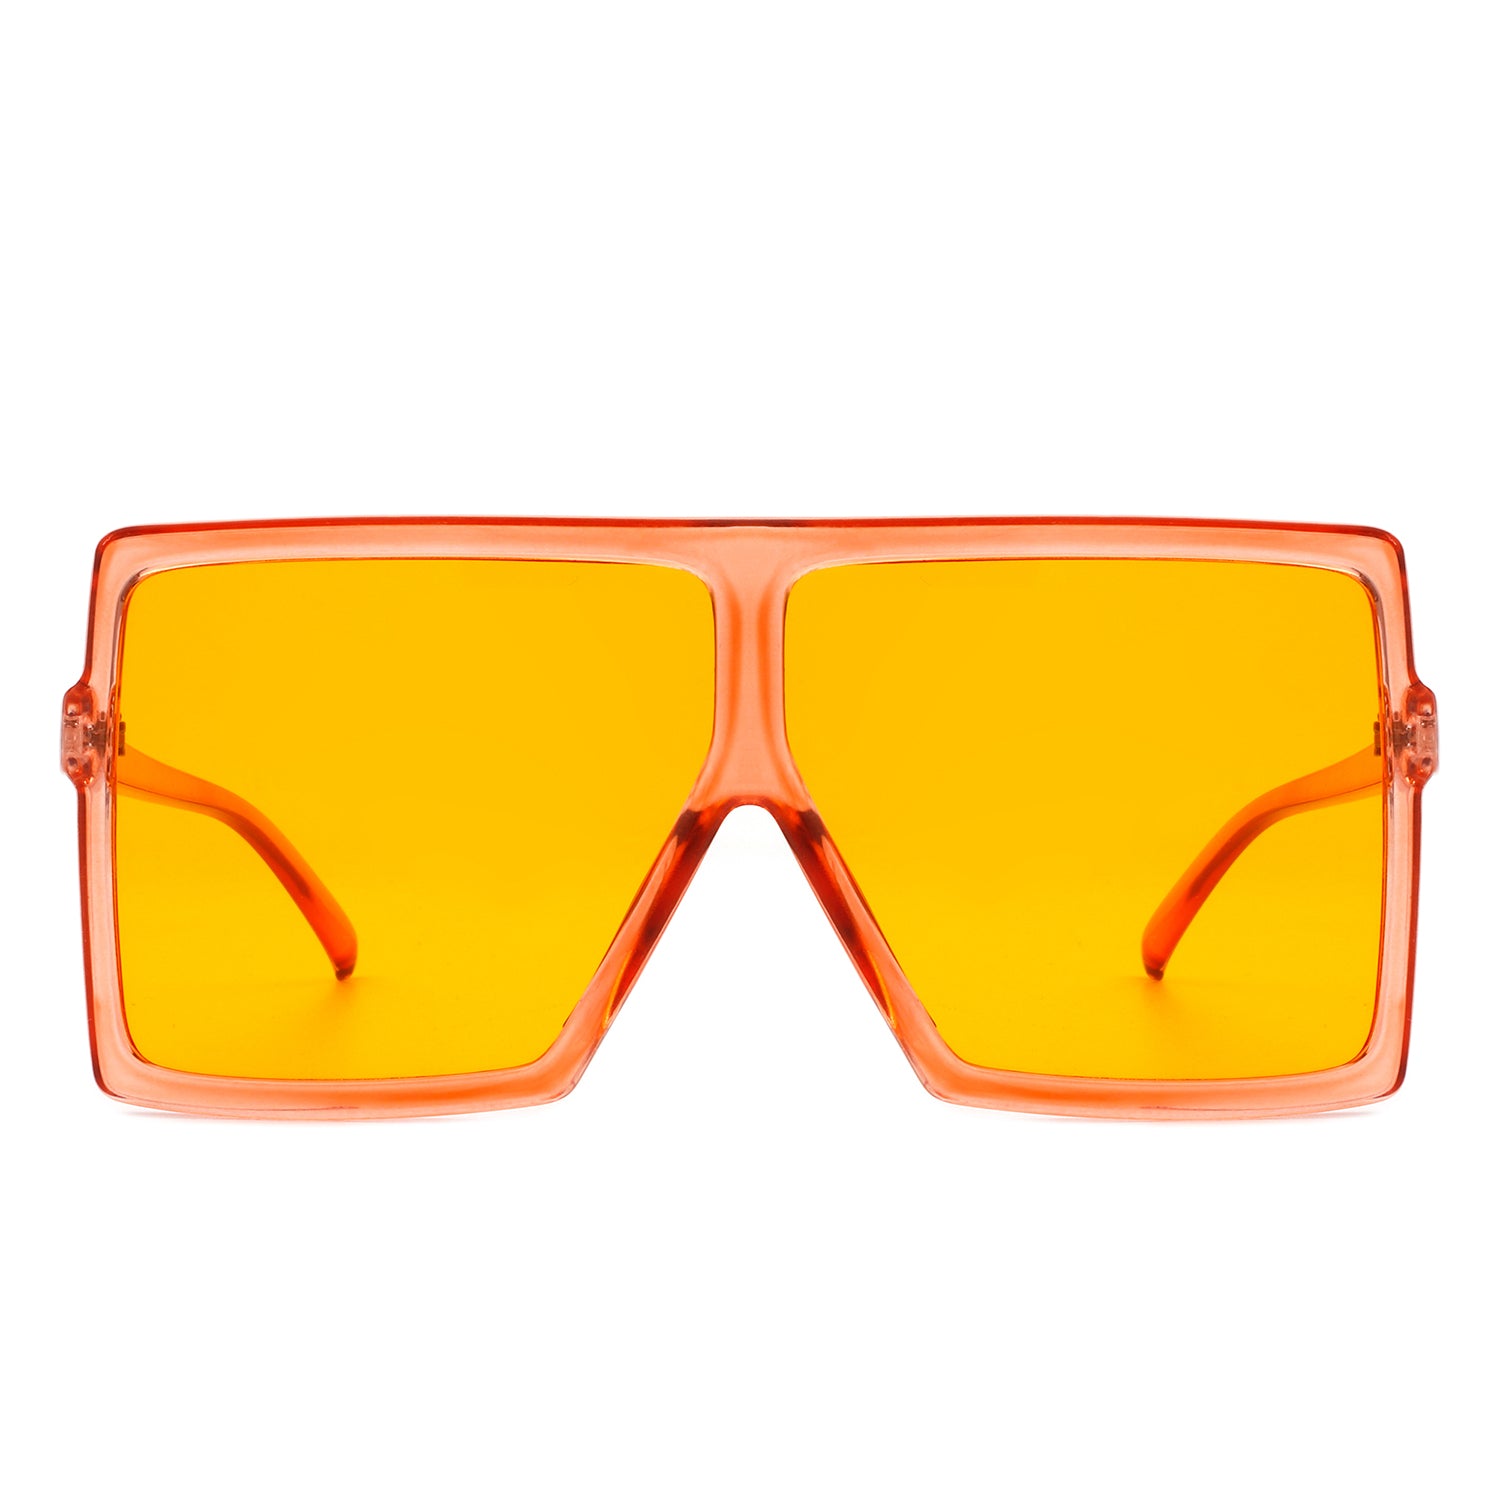 Fashion Sunglasses Women Yellow  Yellow Oversized Sunglasses